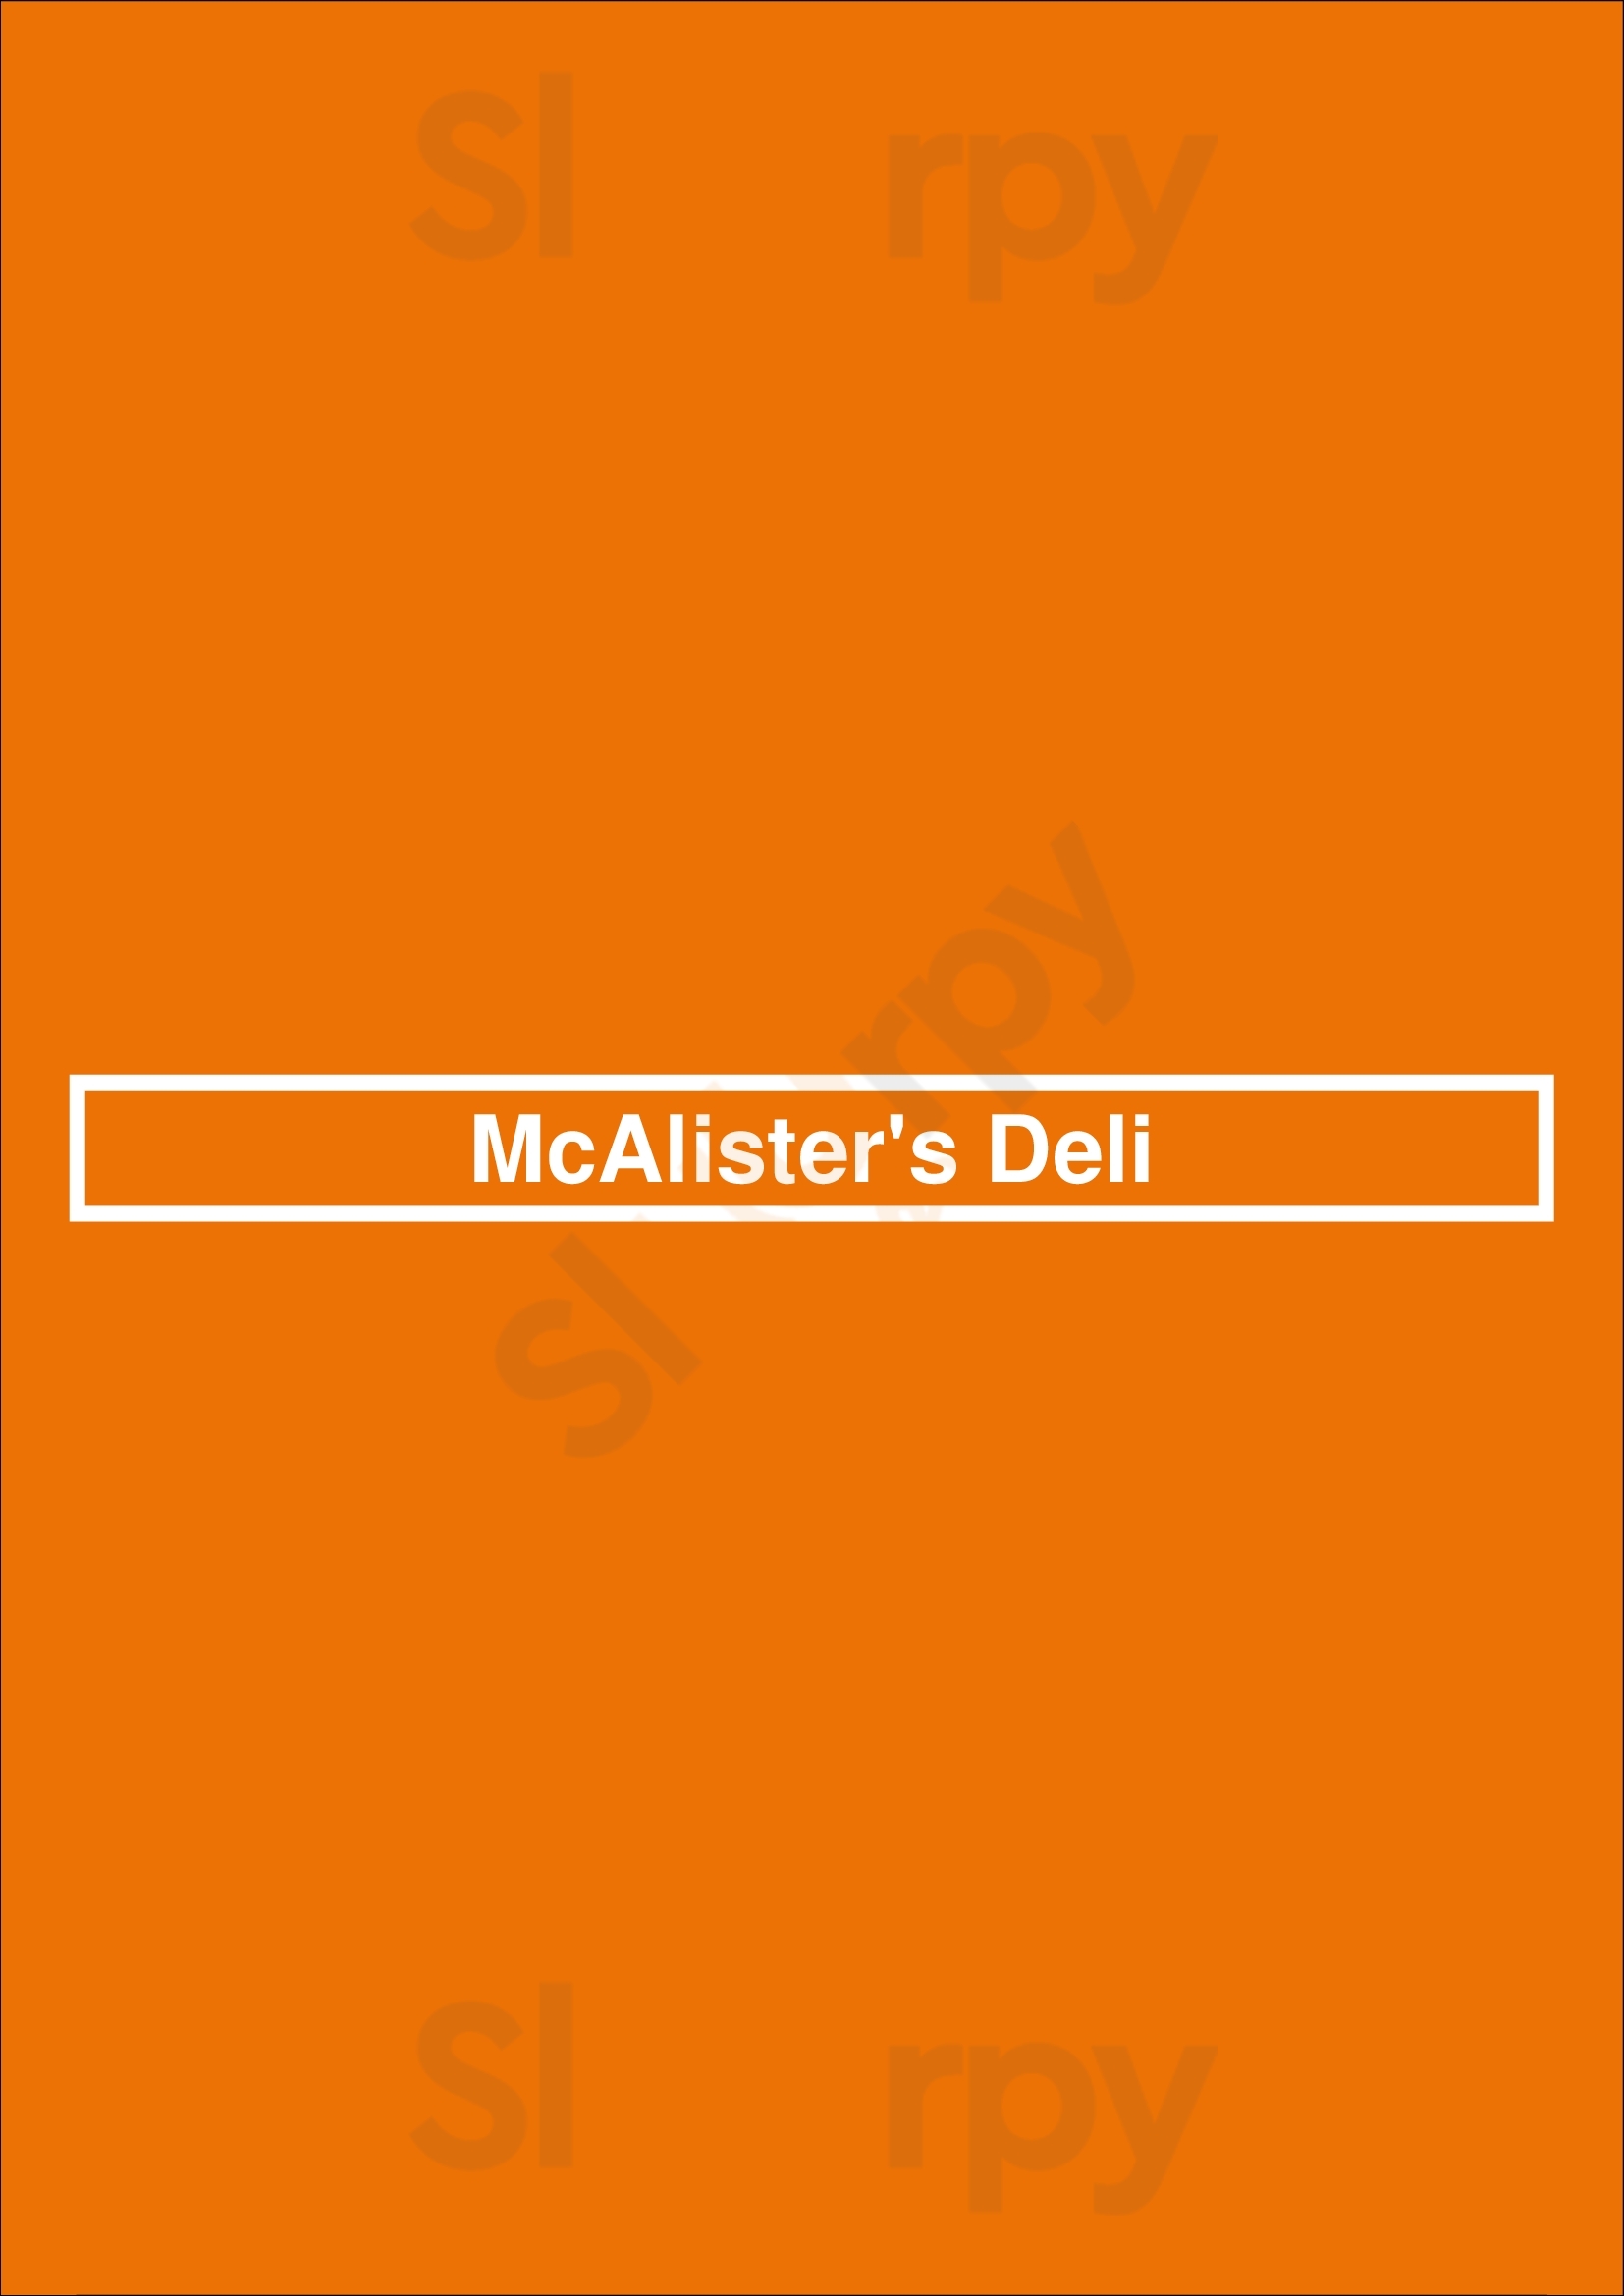 Mcalister's Deli Charlotte Menu - 1